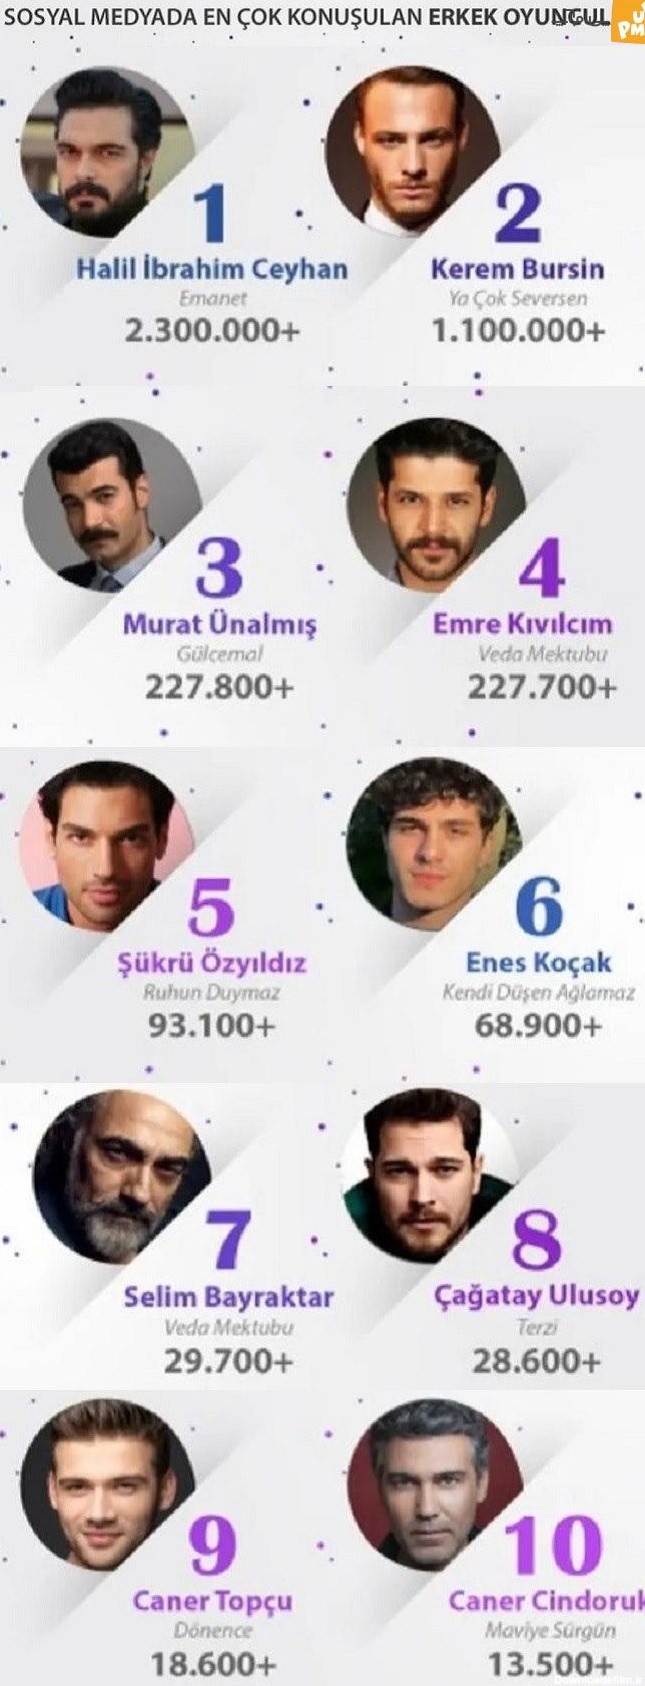 پر صحبت ترین بازیگران مرد ترکیه ای در فضای مجازی + تصاویر ...